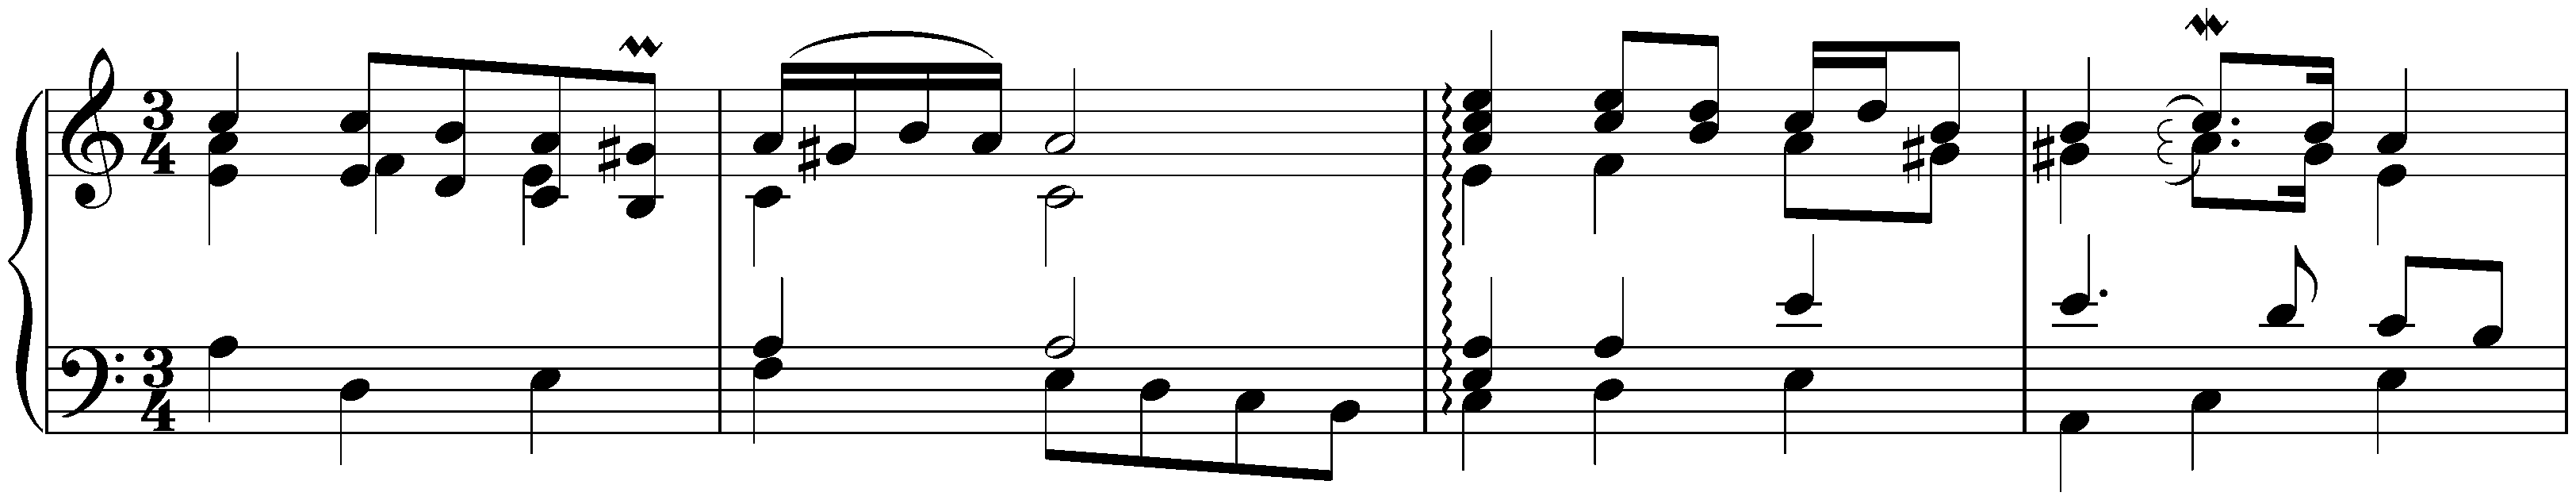 English Suite no. 2 in A minor, BWV 807; 4b. Les agréments de la même Sarabande